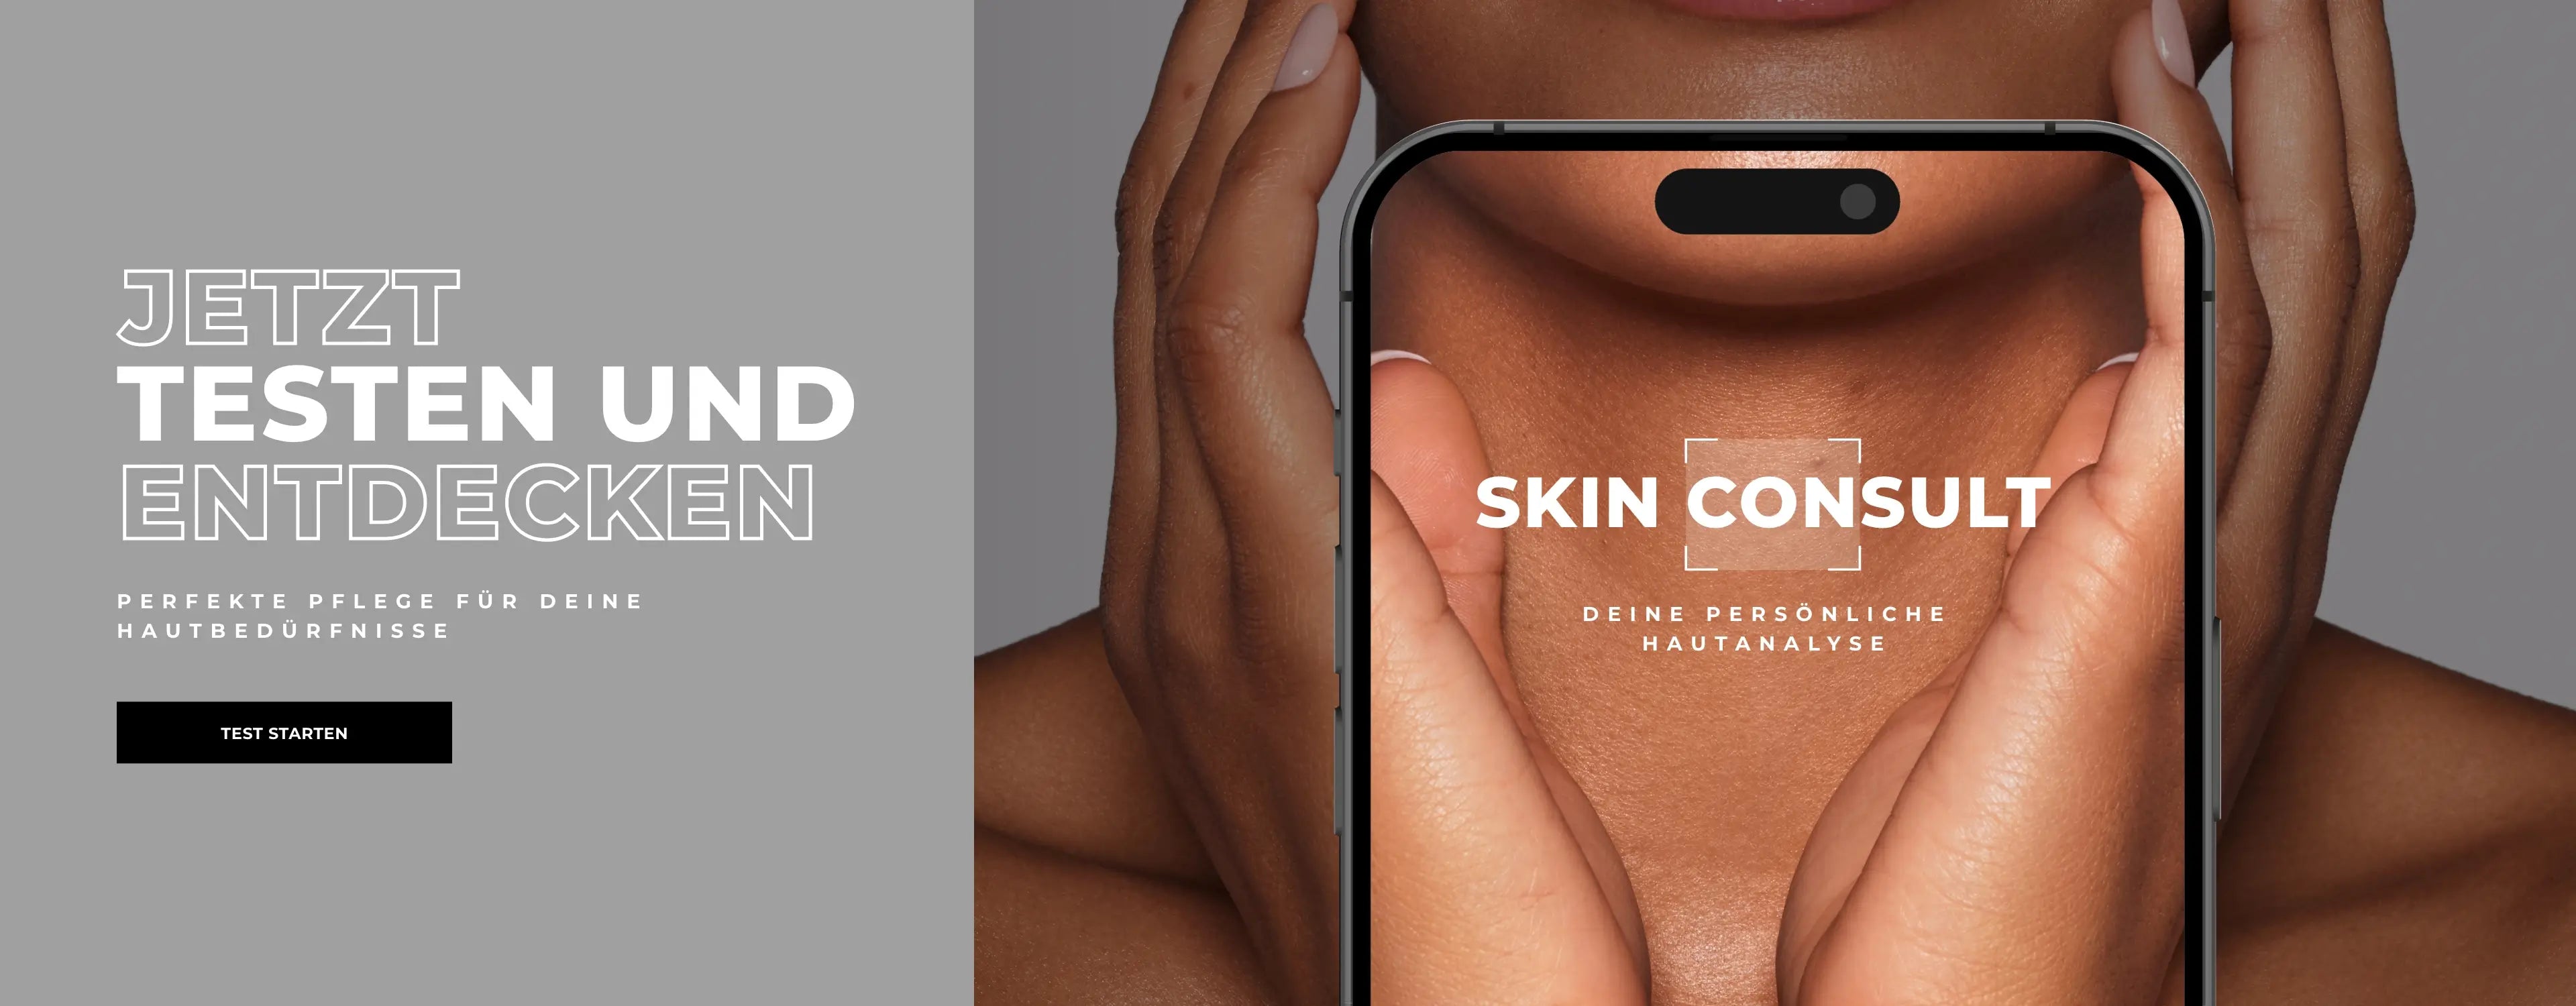 Skin Consult Produktberater link zu deiner persönlichen Hautanalyse desktop